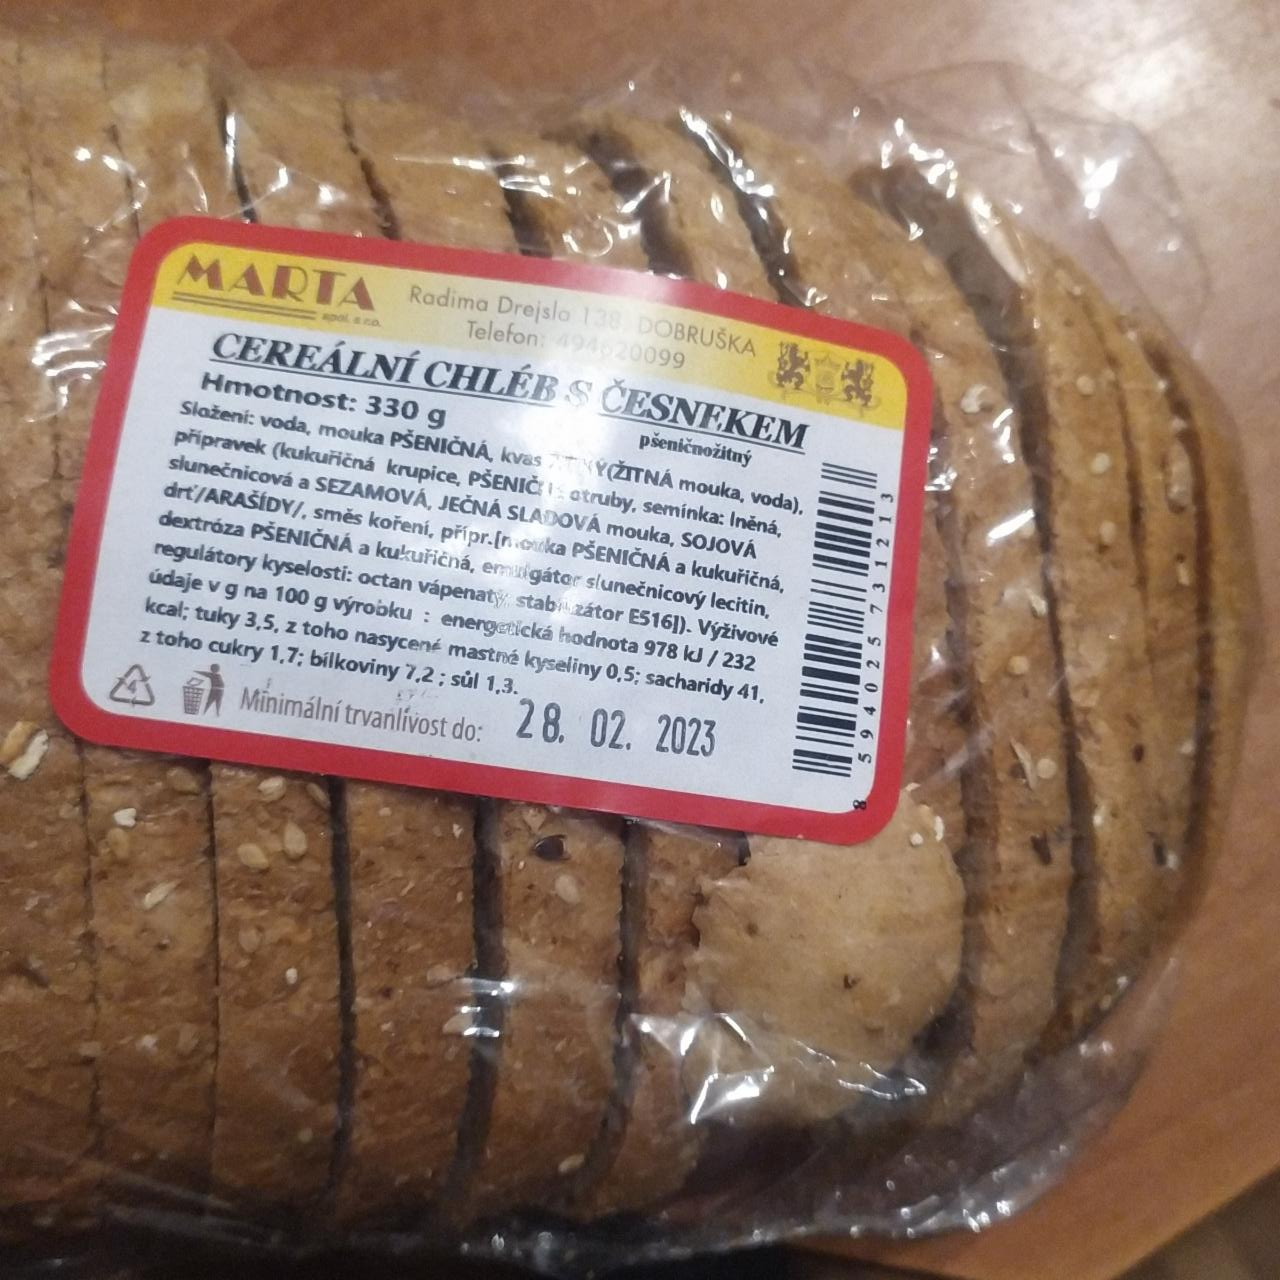 Fotografie - Cereální chléb s česnekem Pekárna Dobruška MARTA